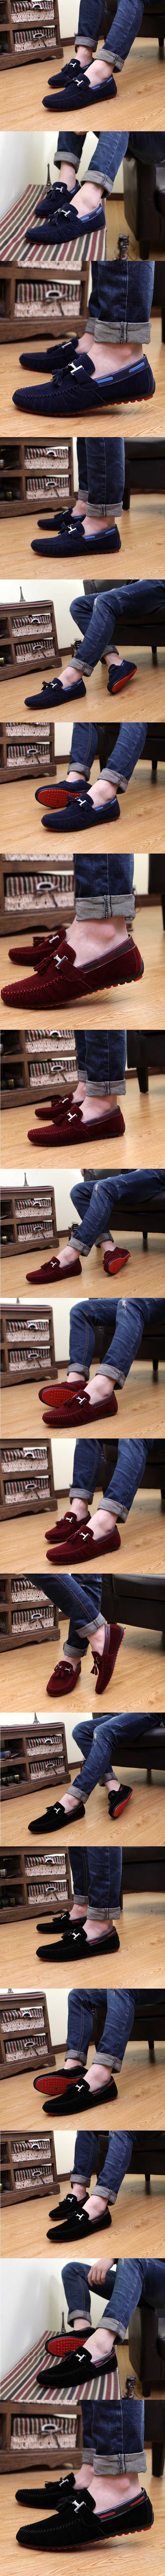 jual sepatu pria terbaru model slip on , belanja sepatu pria online, temukan koleksi lengkap sepatu kulit pria hanya di store.pakaianfashionpria.com